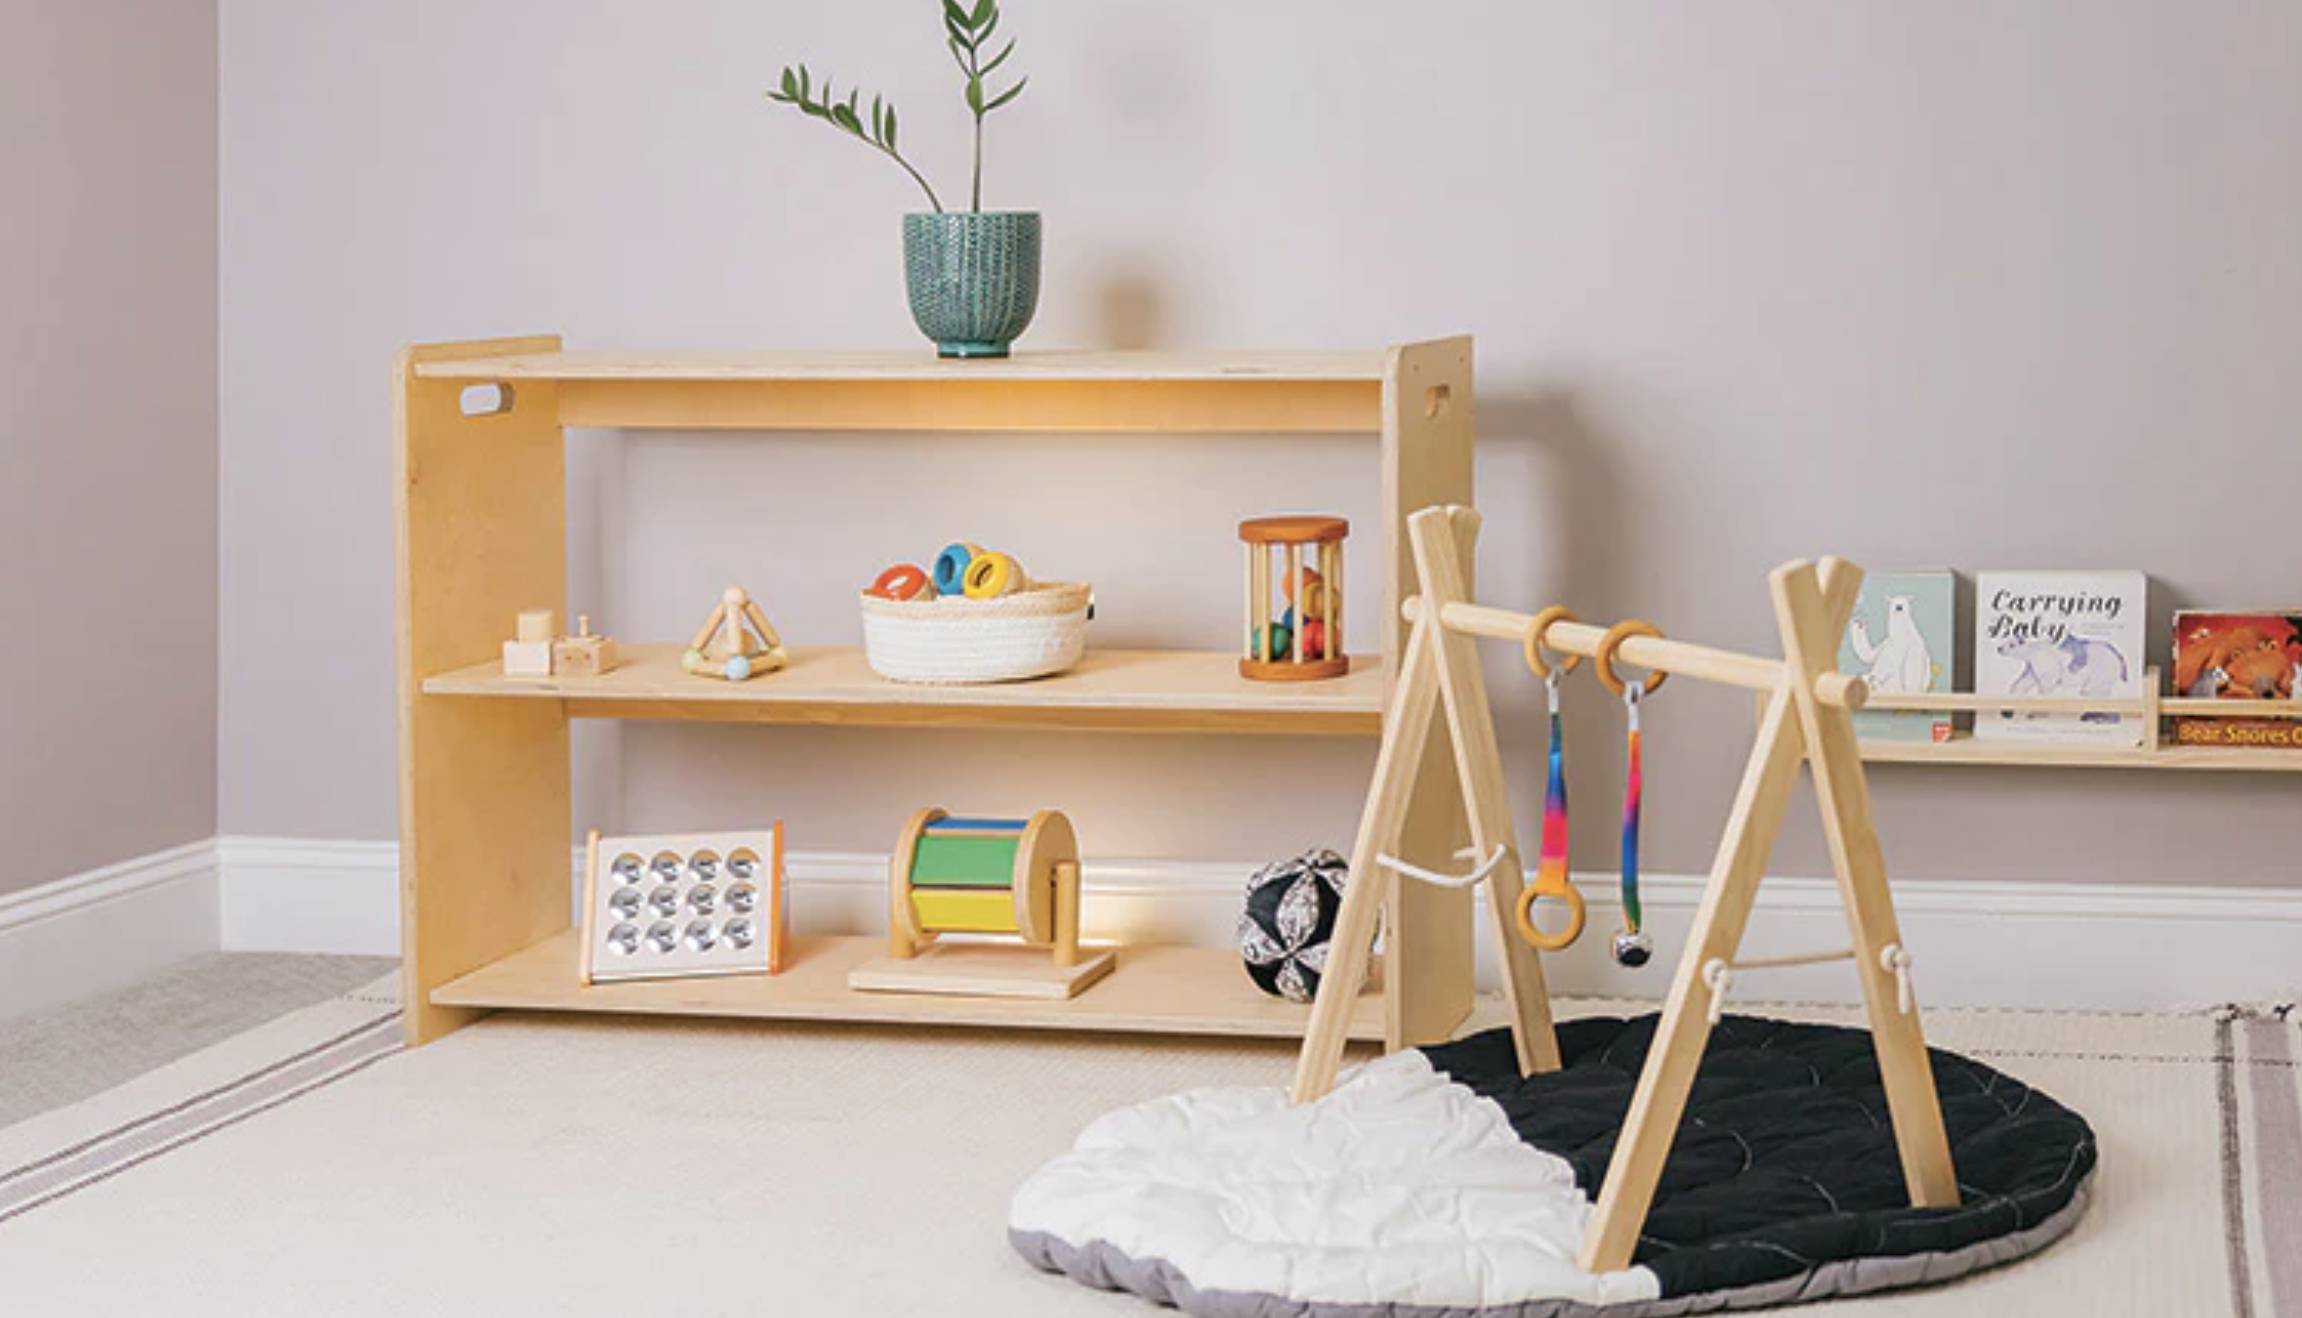 Une image d'une salle de jeux avec des jouets Montessori